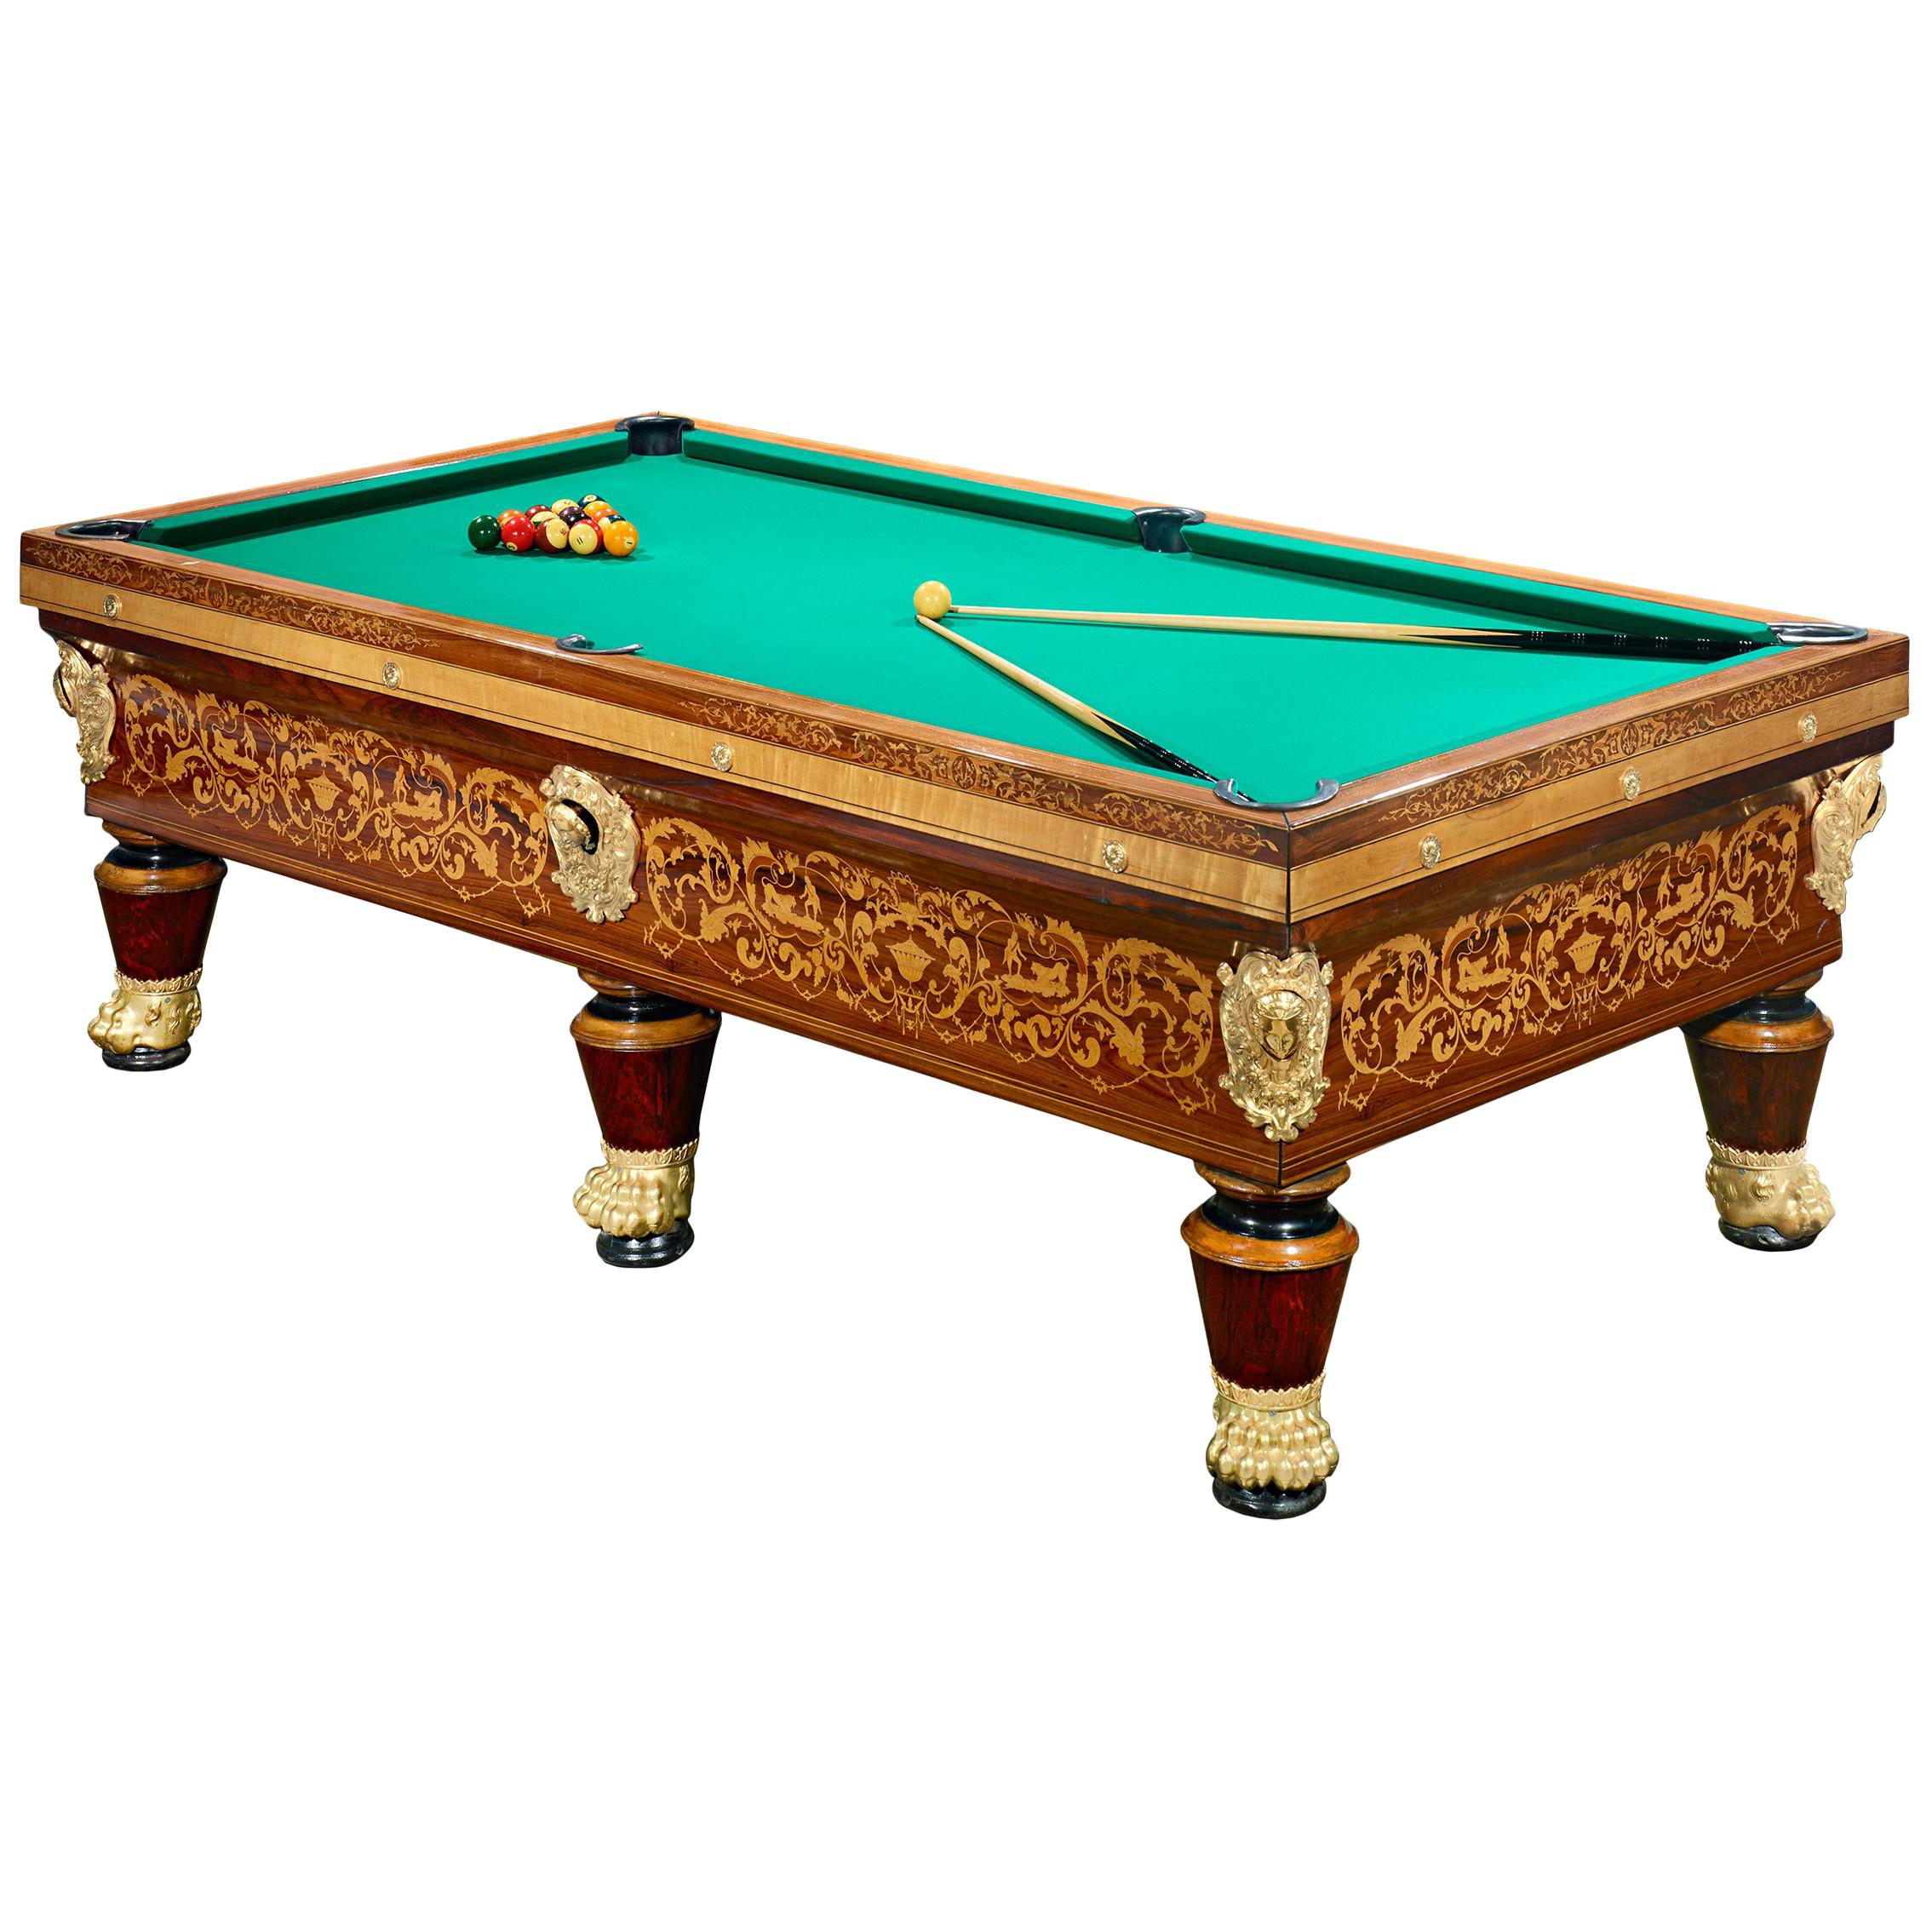 General Clauzel's Charlex X Billiard Table